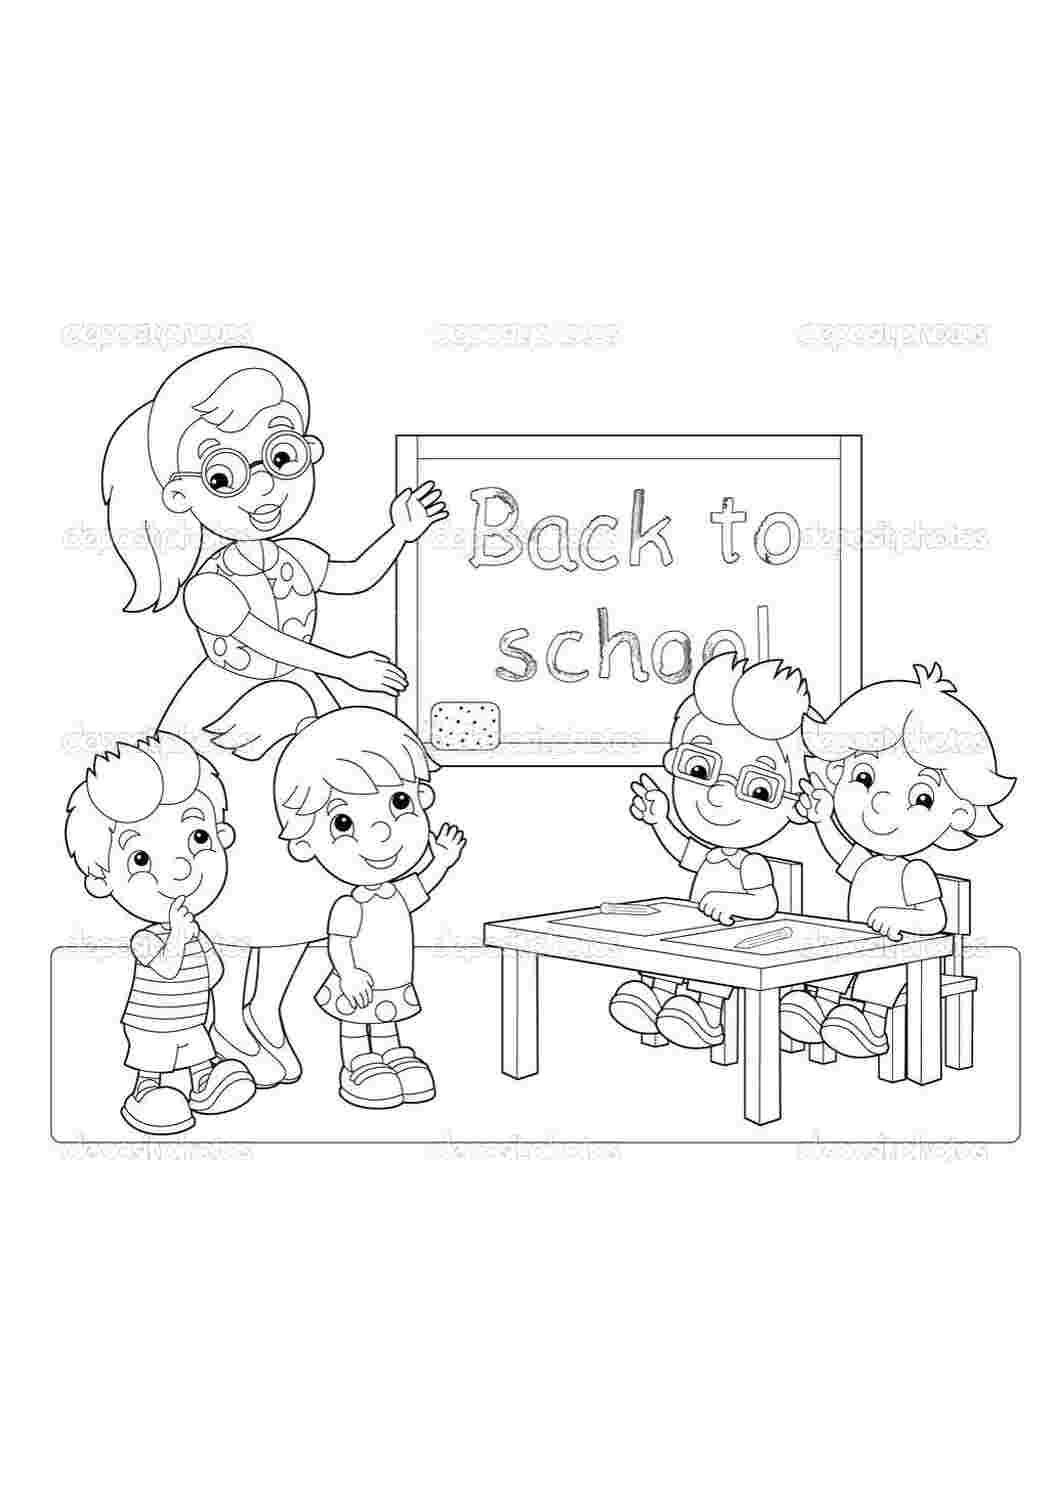 Картинка раскраска школа для детей